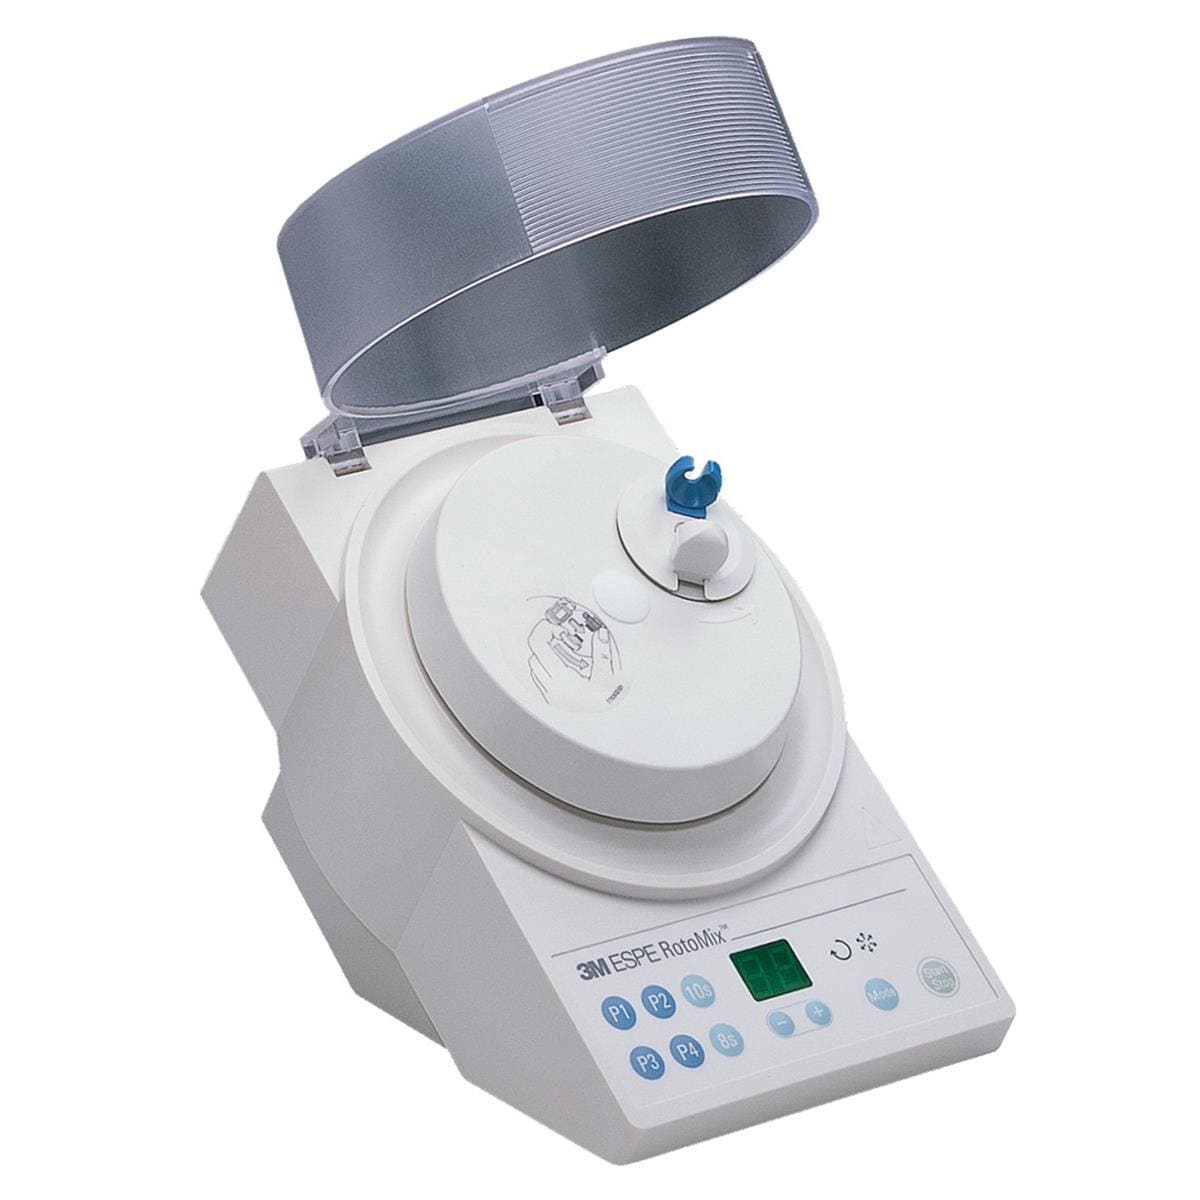 Rotomix Amalgamator Capsule Mixing Machine